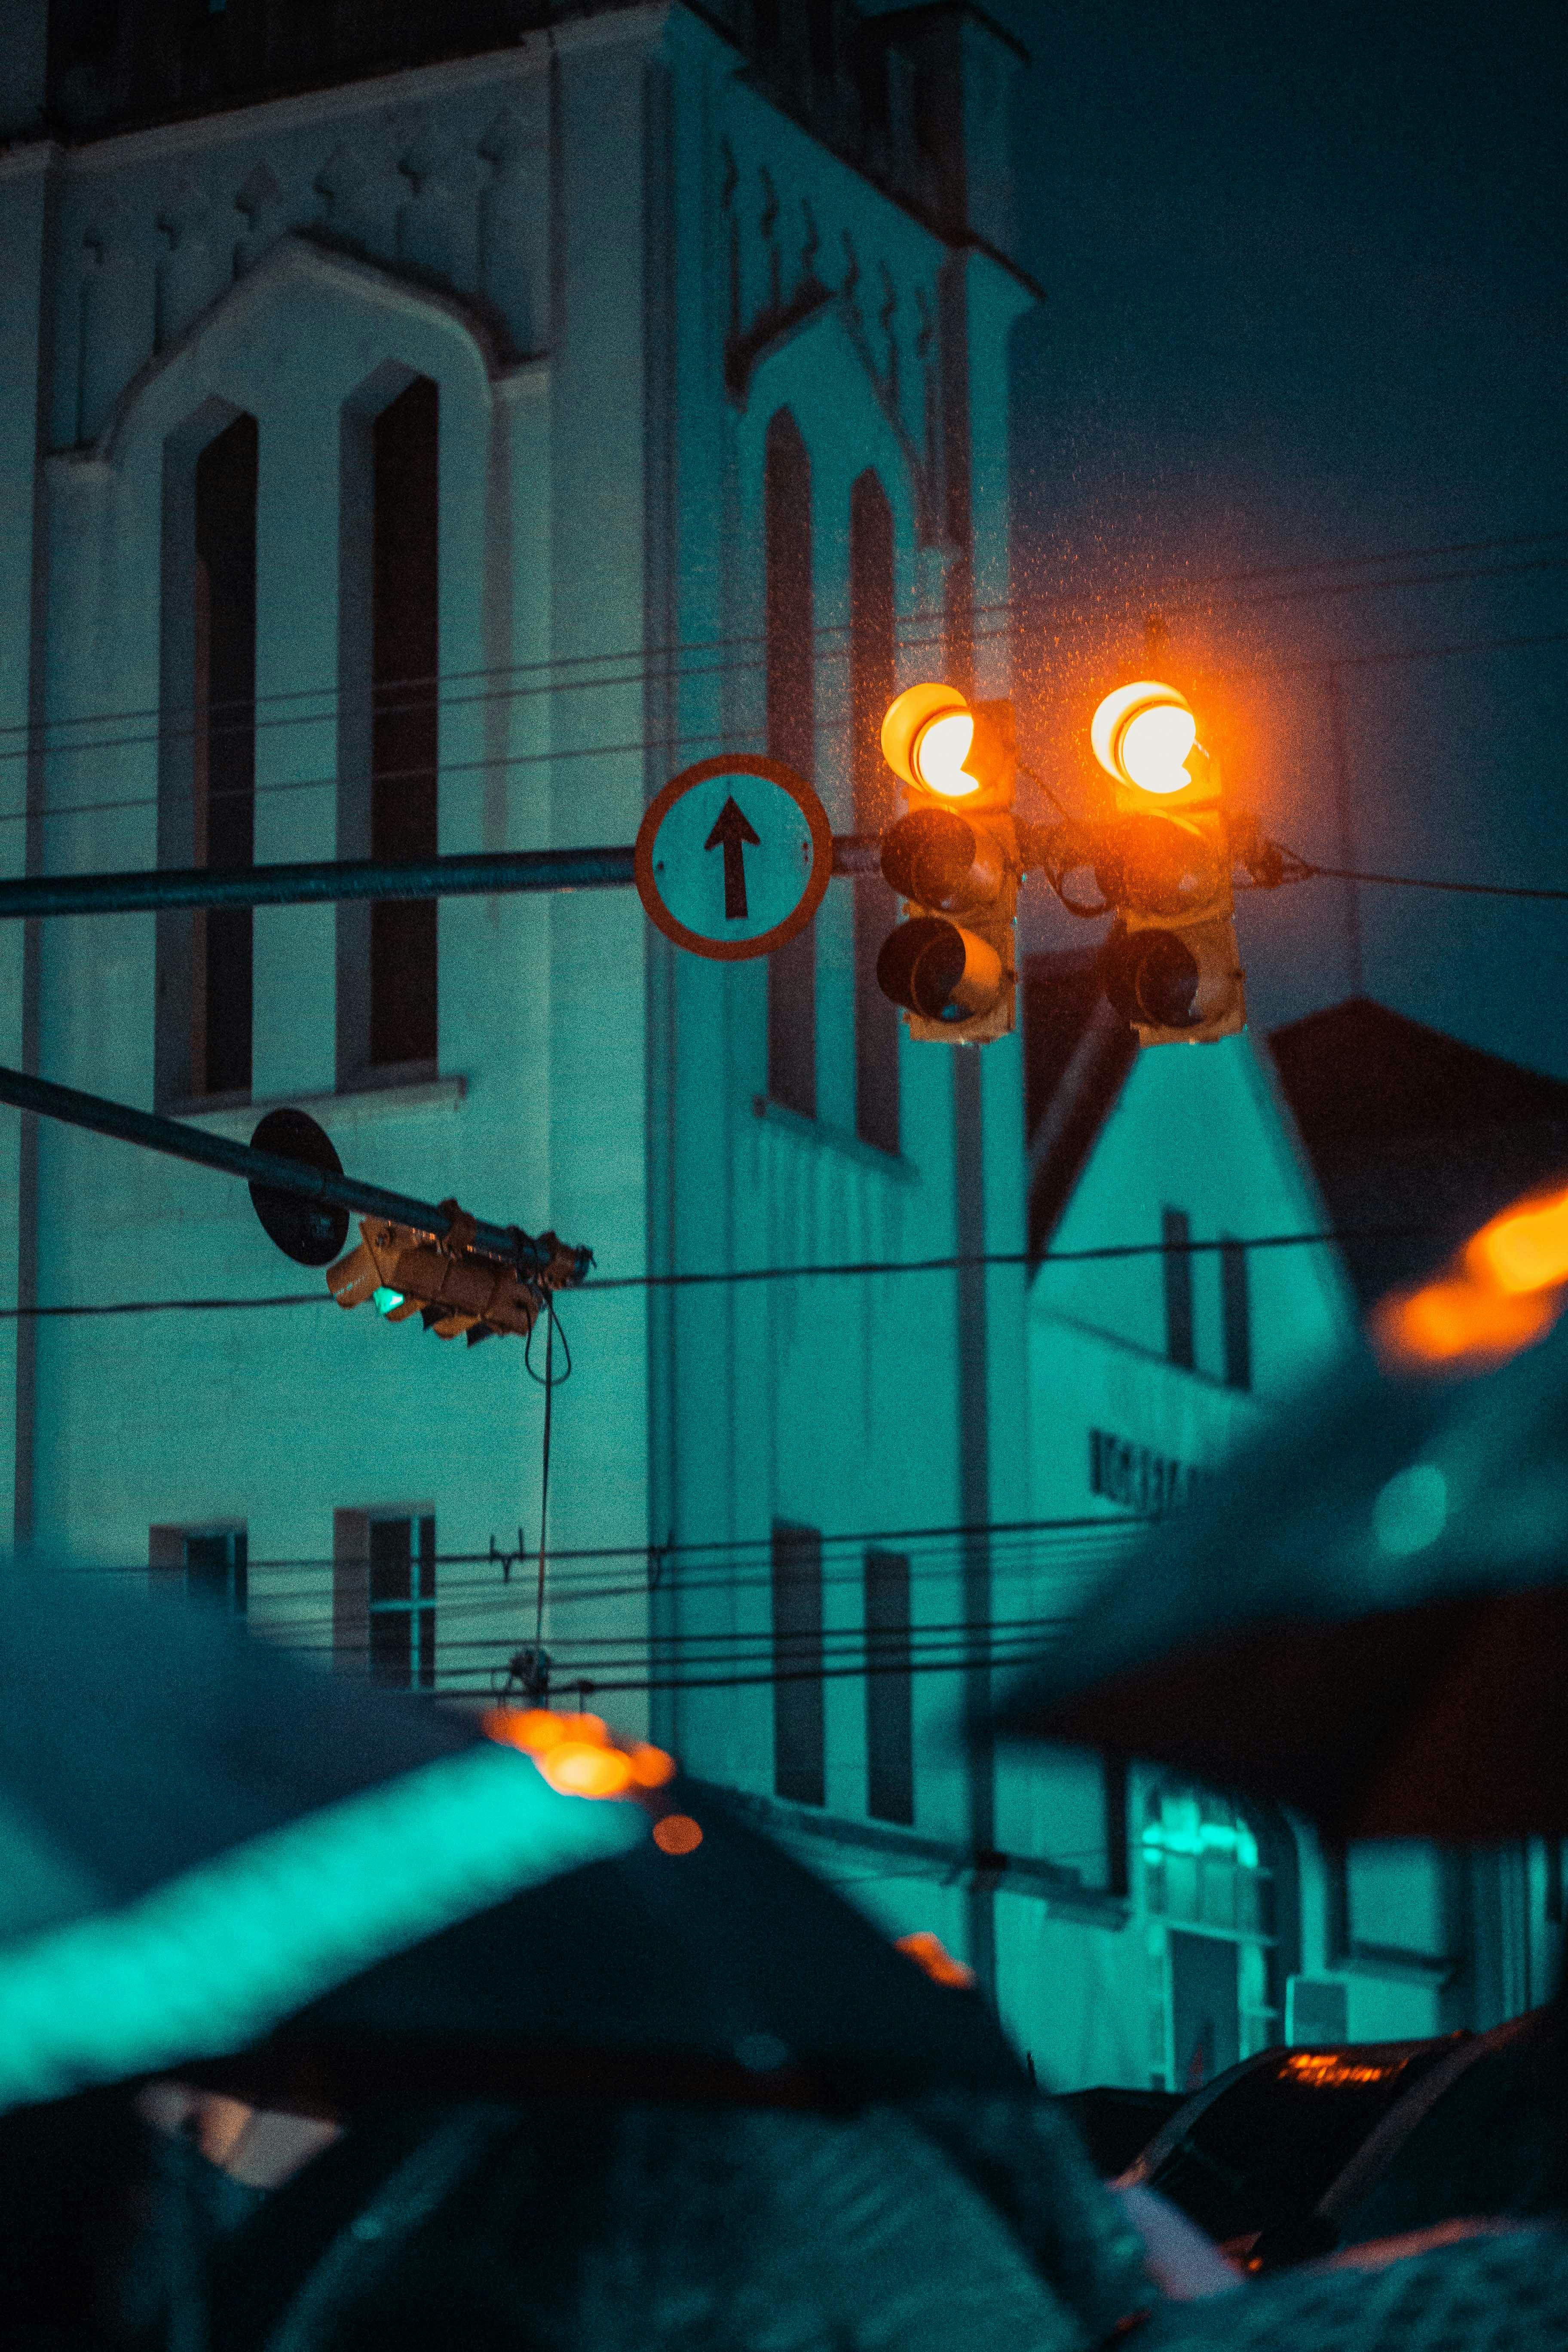 Đèn giao thông là một chủ đề thú vị trong nhiếp ảnh. Những bức ảnh về đèn tín hiệu đường bộ sẽ giúp bạn thấy được sự đa dạng và độc đáo của các loại đèn giao thông trên đường phố.